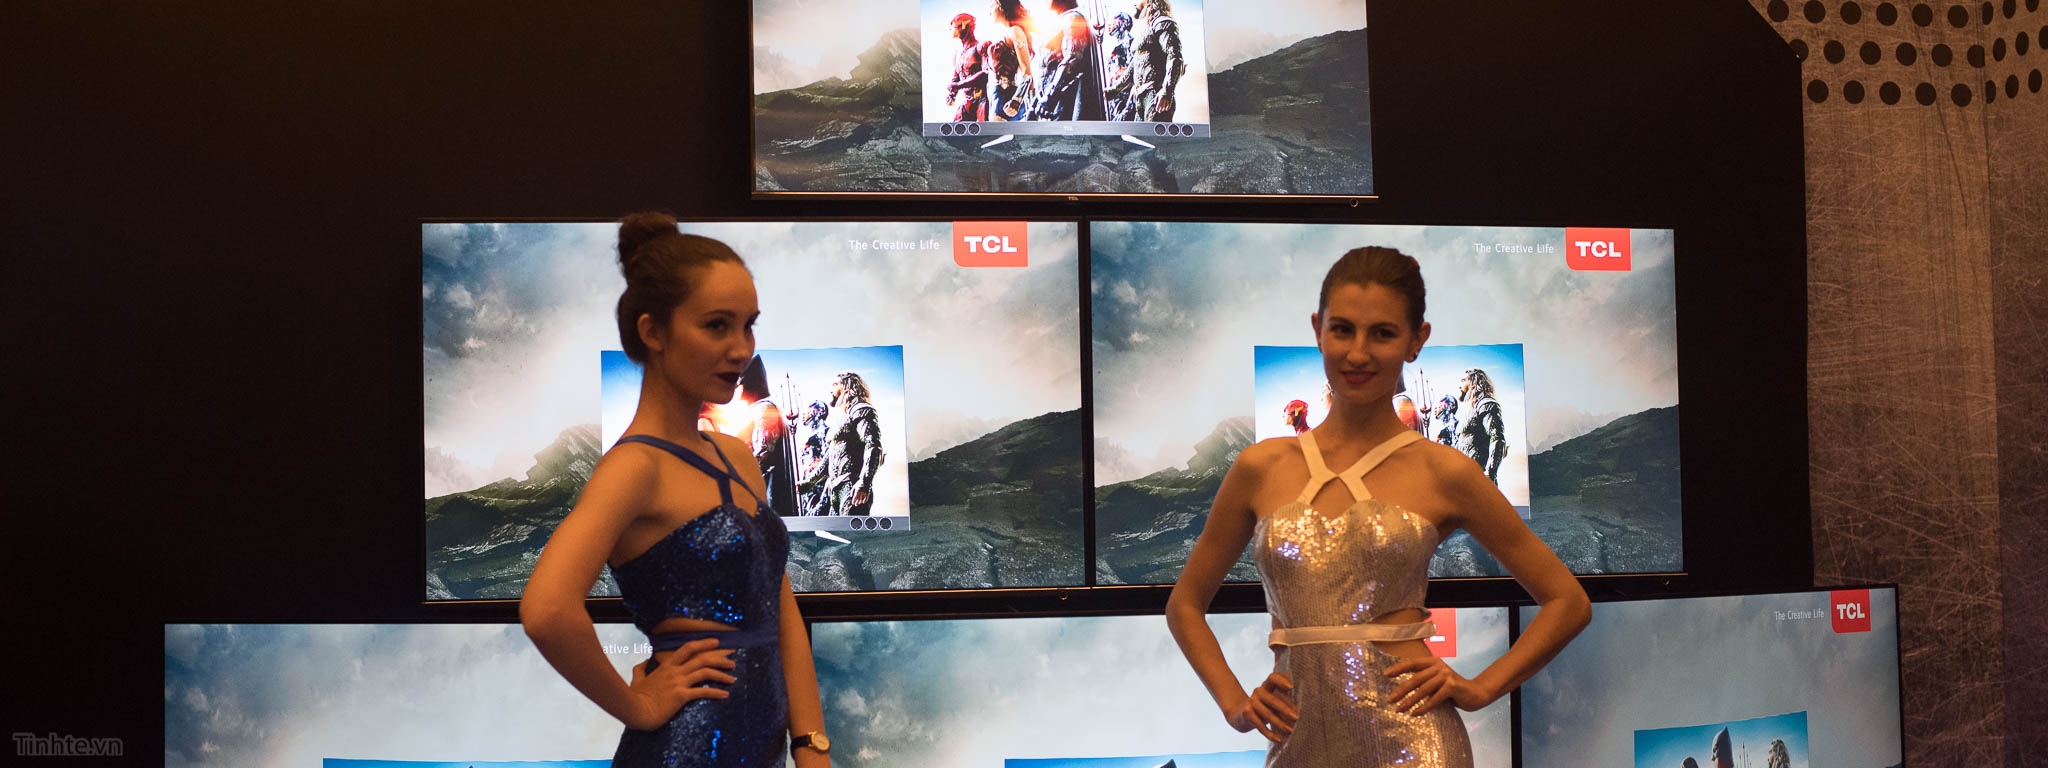 TCL giới thiệu TV 4K HDR P6 giá 27.99 triệu cho bản 65"